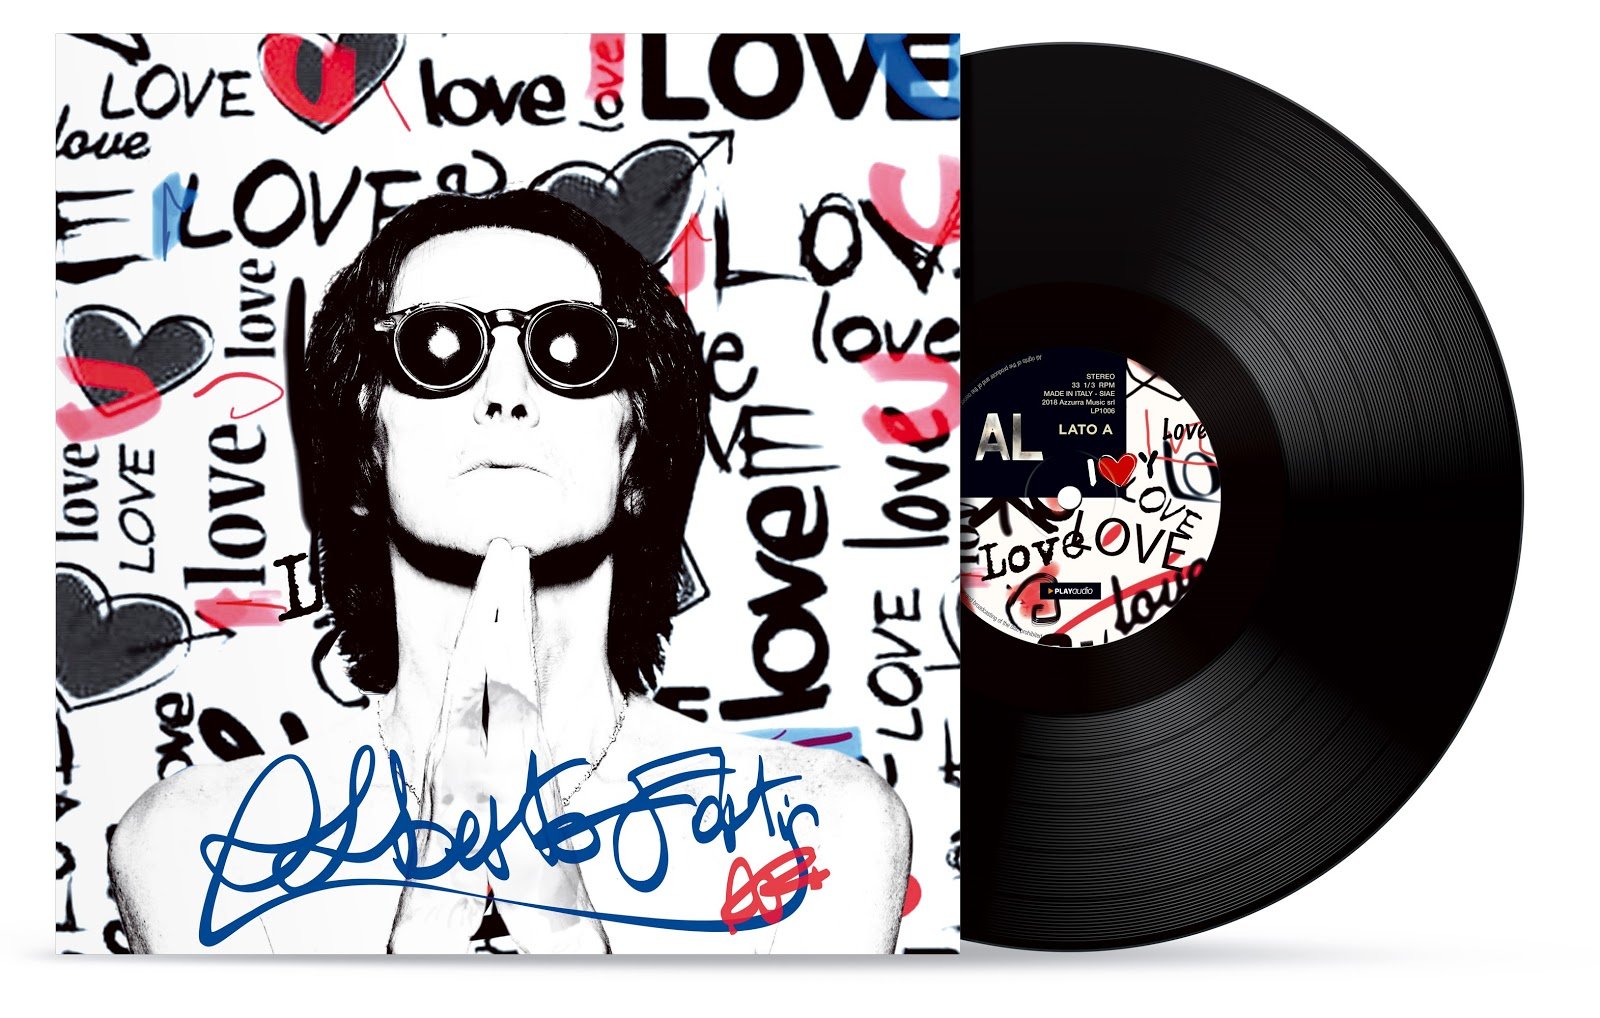 I Love You: il nuovo album di Alberto Fortis in vinile